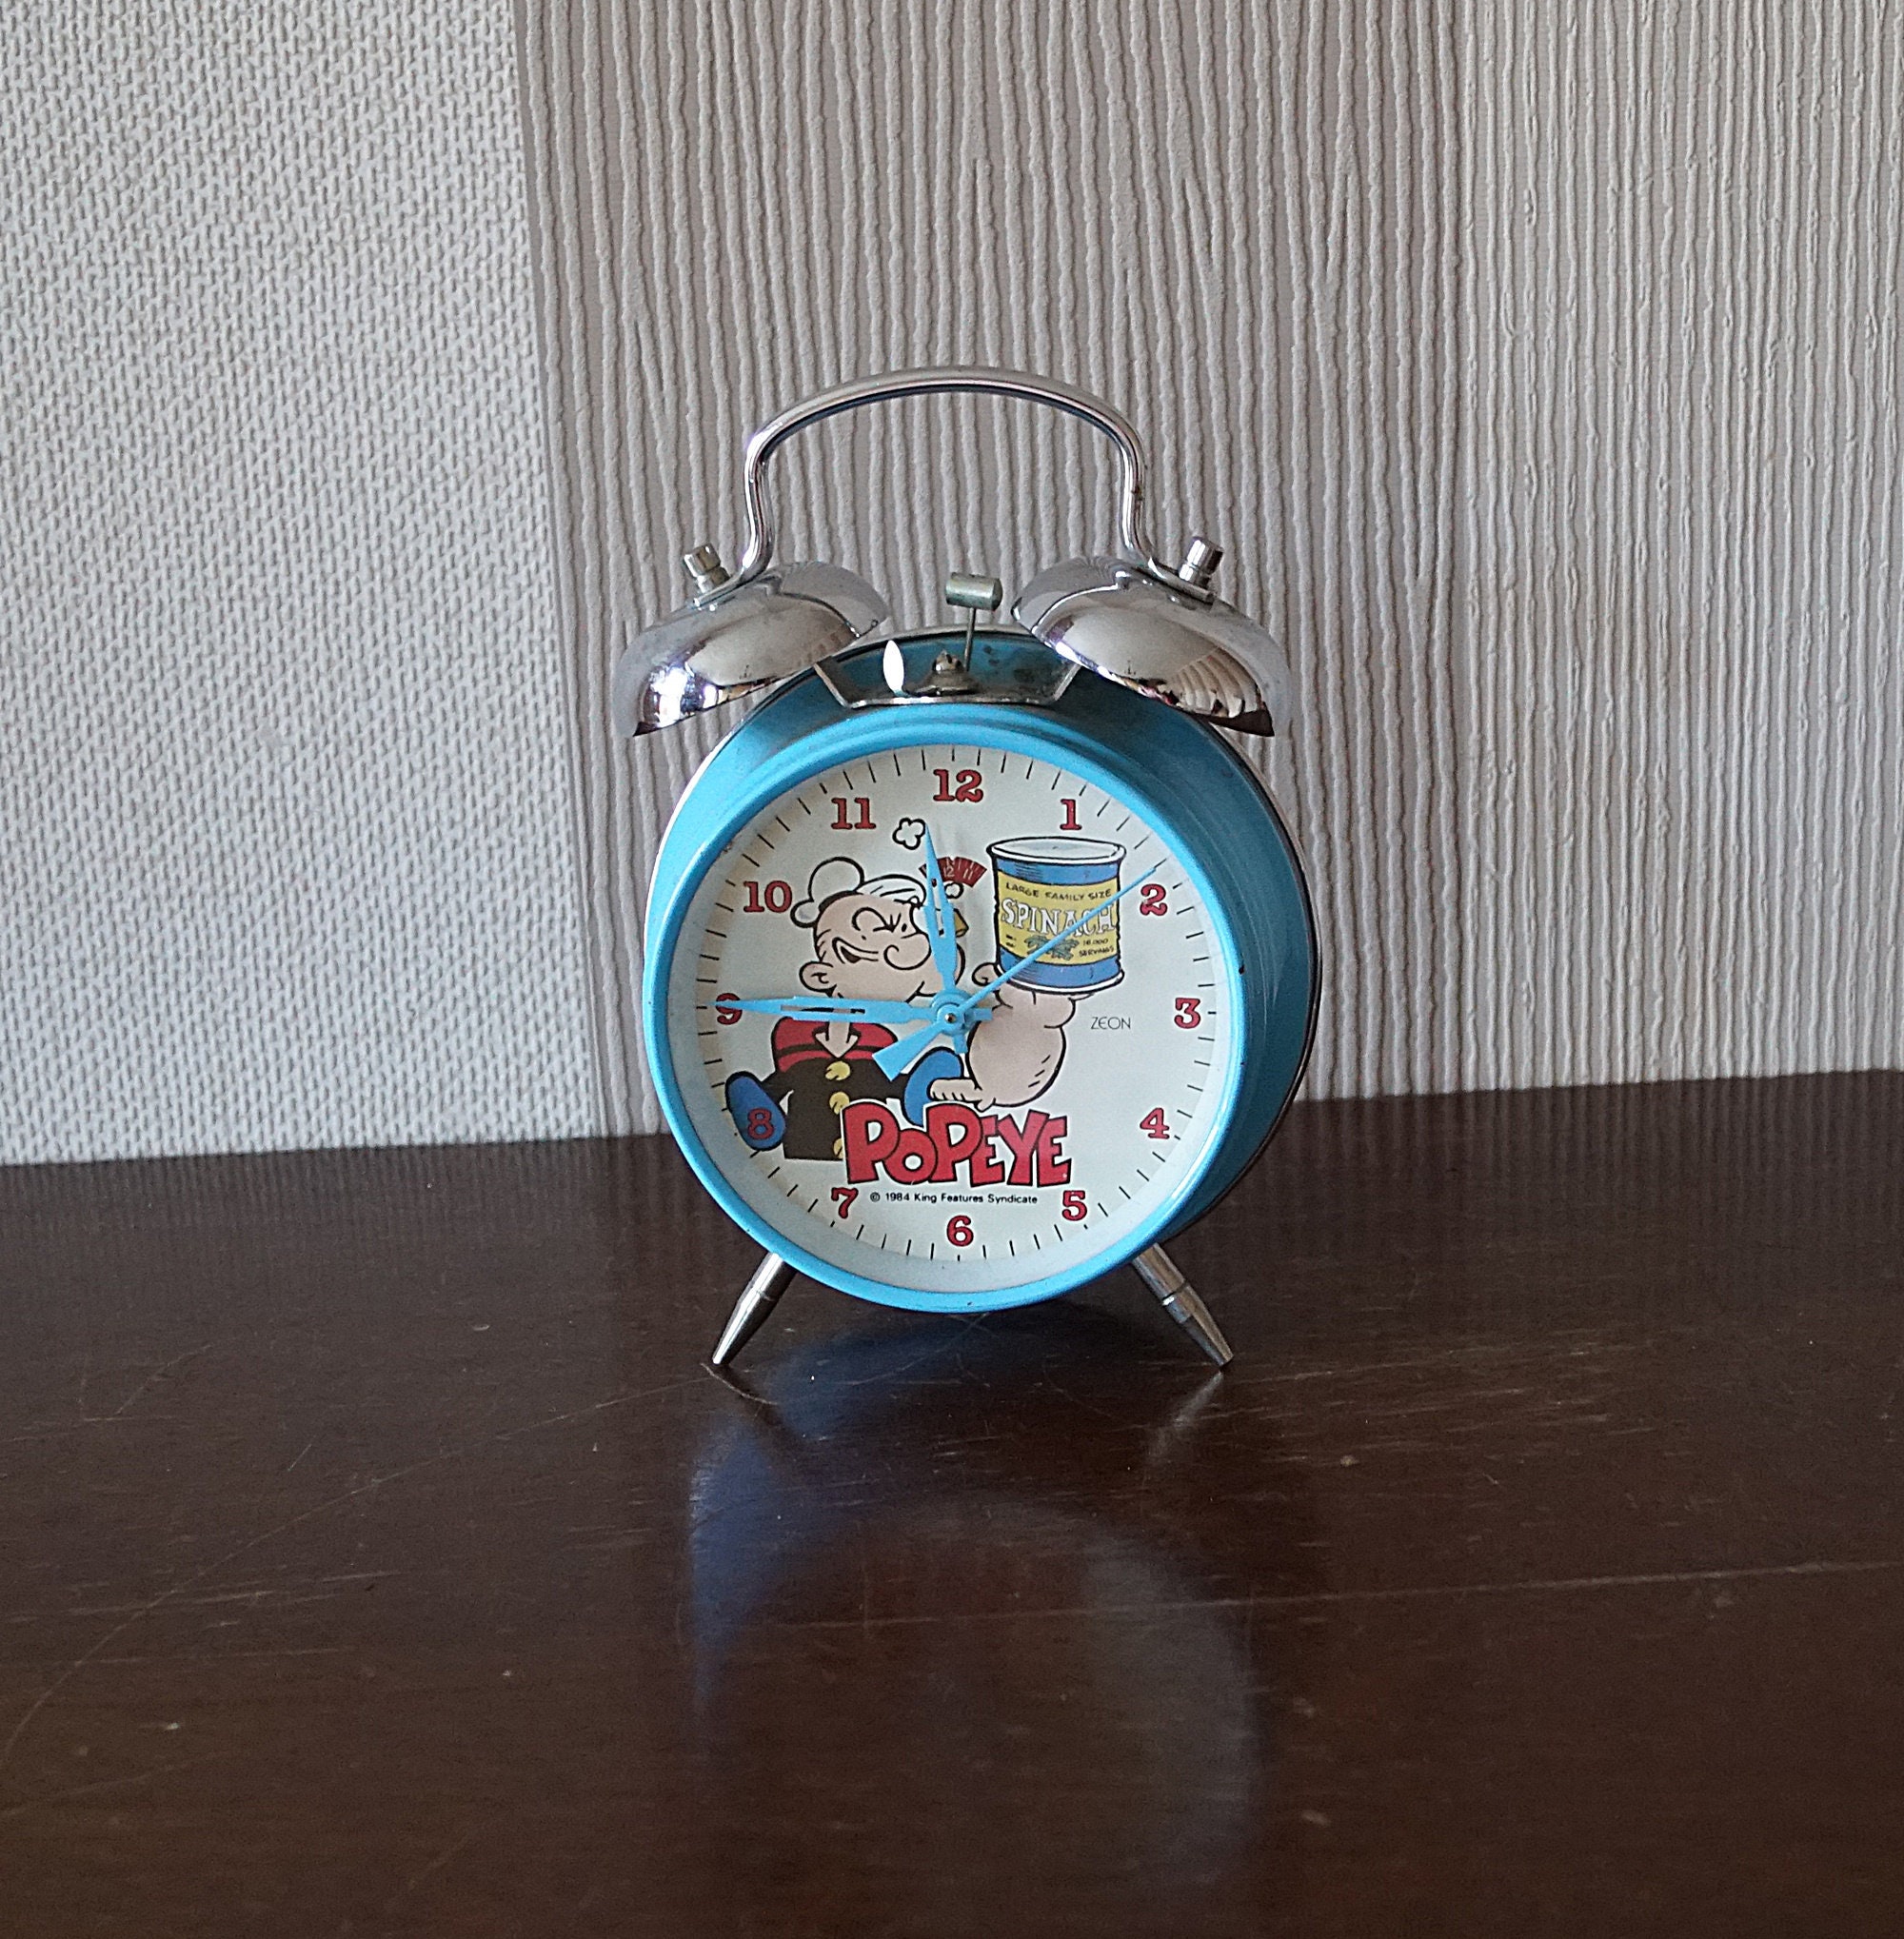 PopEye Clock